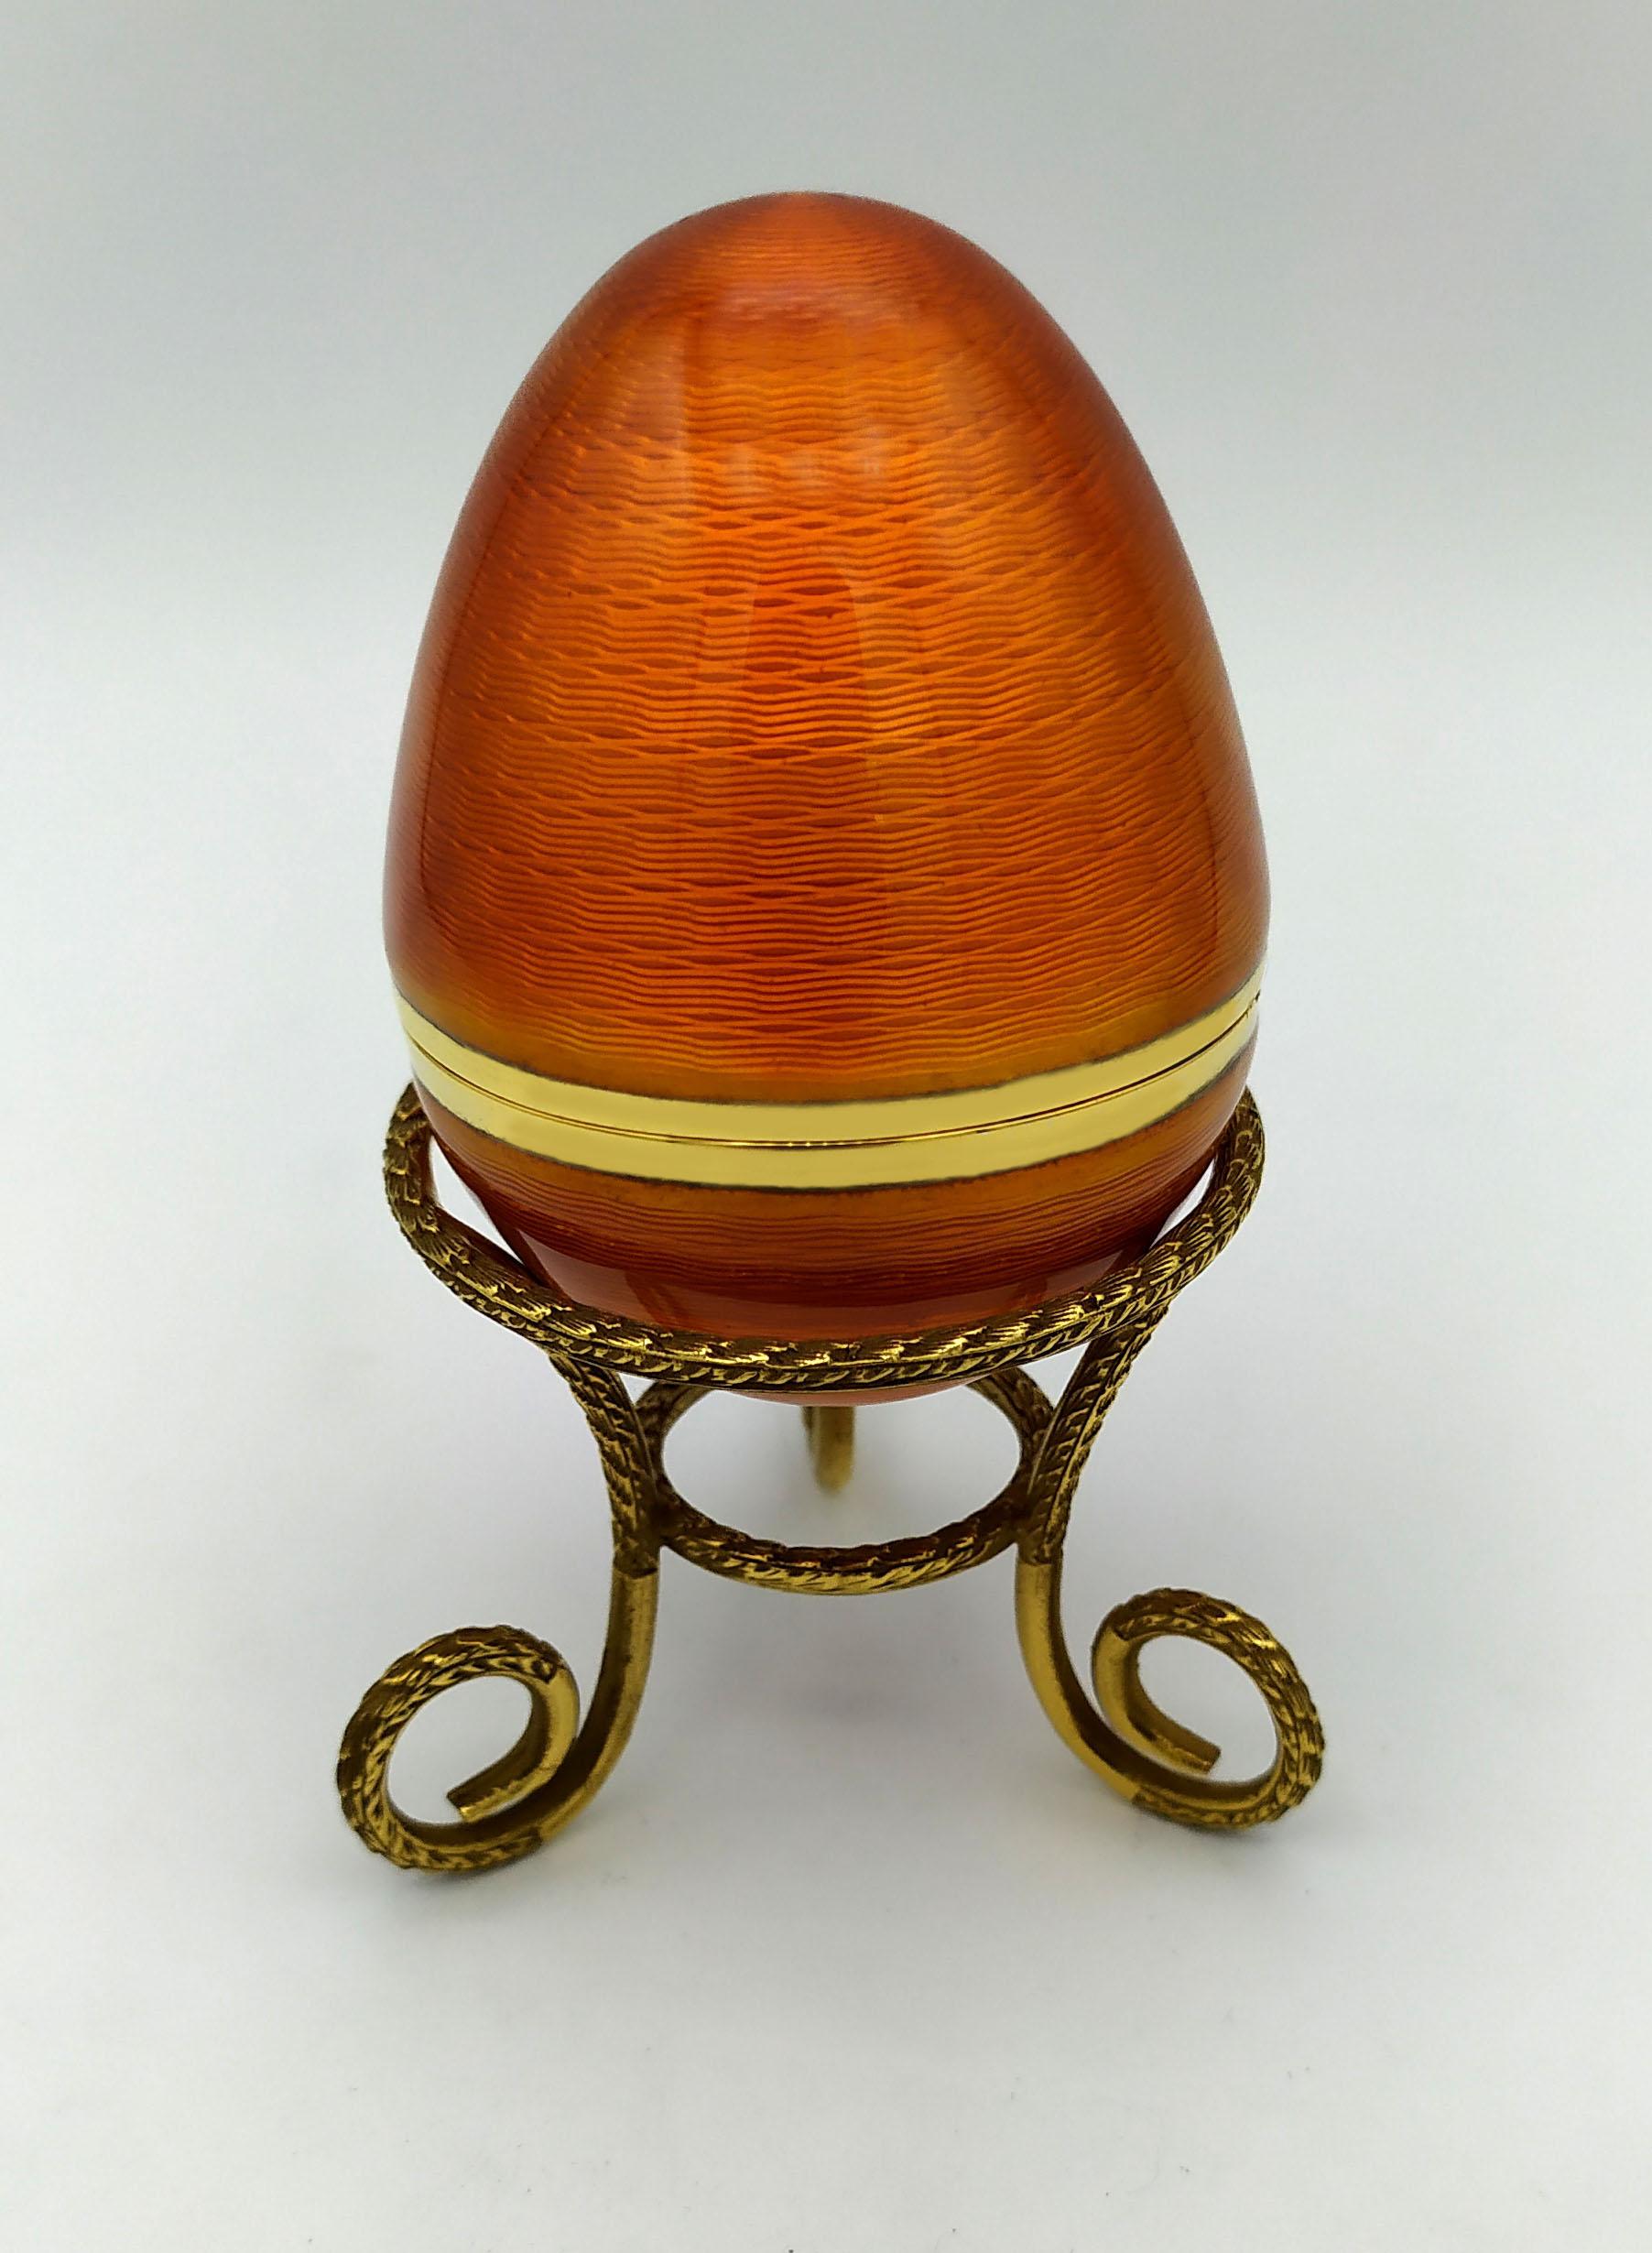 Ei auf Dreibein in 925/1000 Sterlingsilber vergoldet mit durchscheinendem gebranntem Email auf Guillochè, im Stil des russischen Empire, inspiriert von Carl Fabergè Eiern Ende 1800, Anfang 1900. Maße: Durchmesser des Eies cm. 5 cm hoch. 6,8 auf